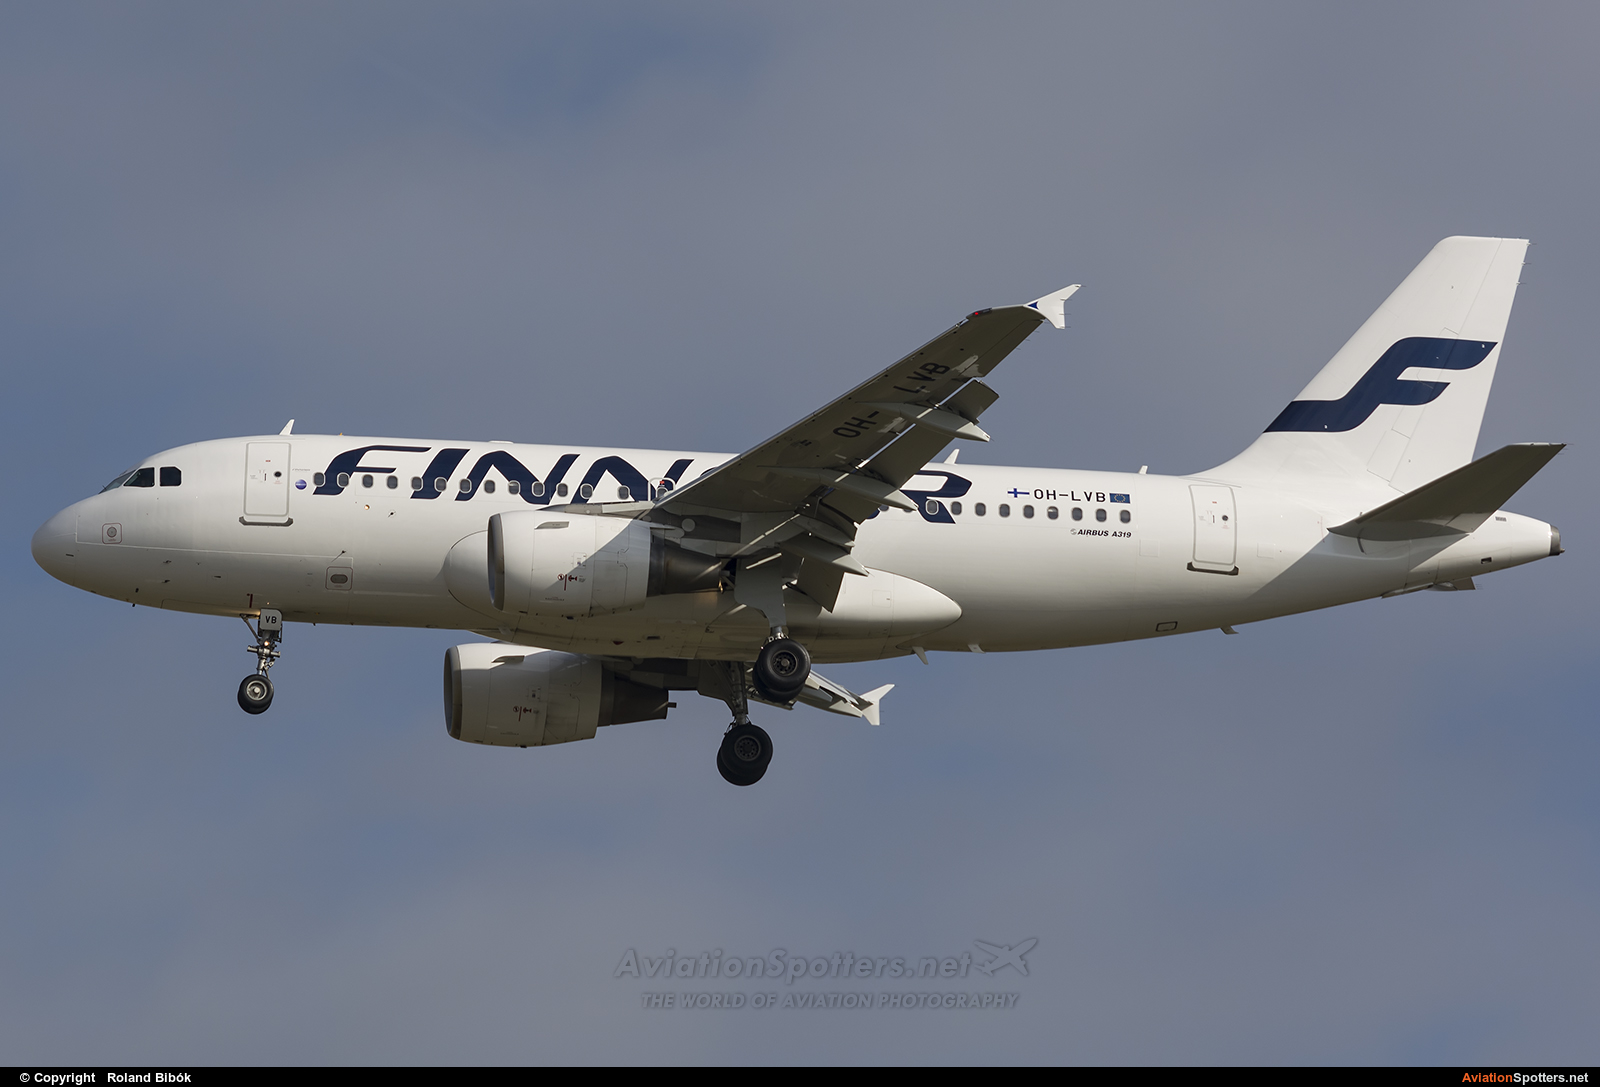 Finnair  -  A319  (OH-LVB) By Roland Bibók (Roland Bibok)